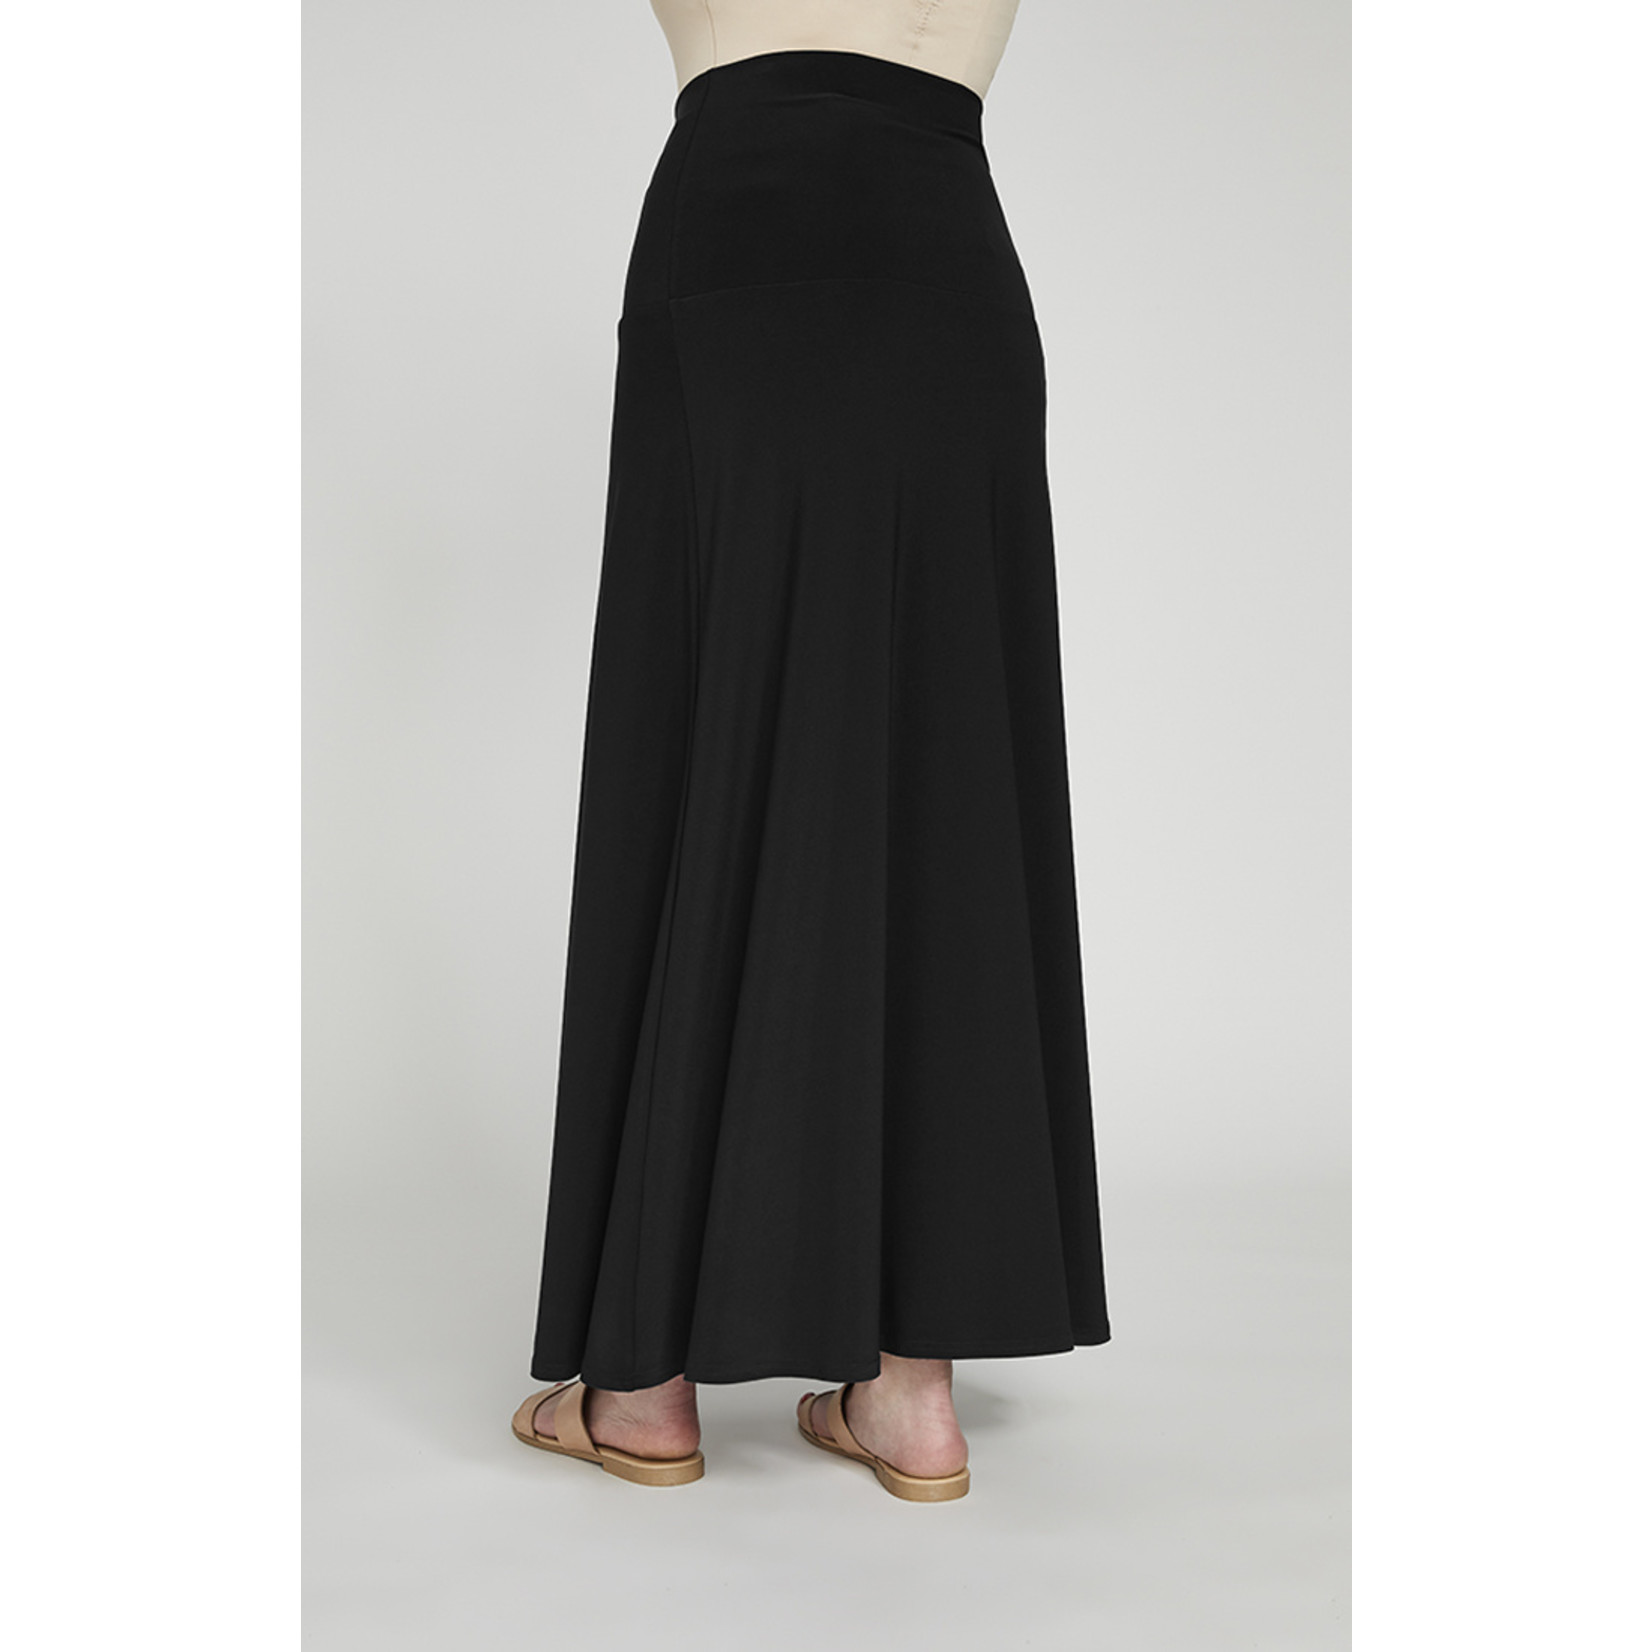 Sympli Sympli A-Line Jersey Skirt/Dress